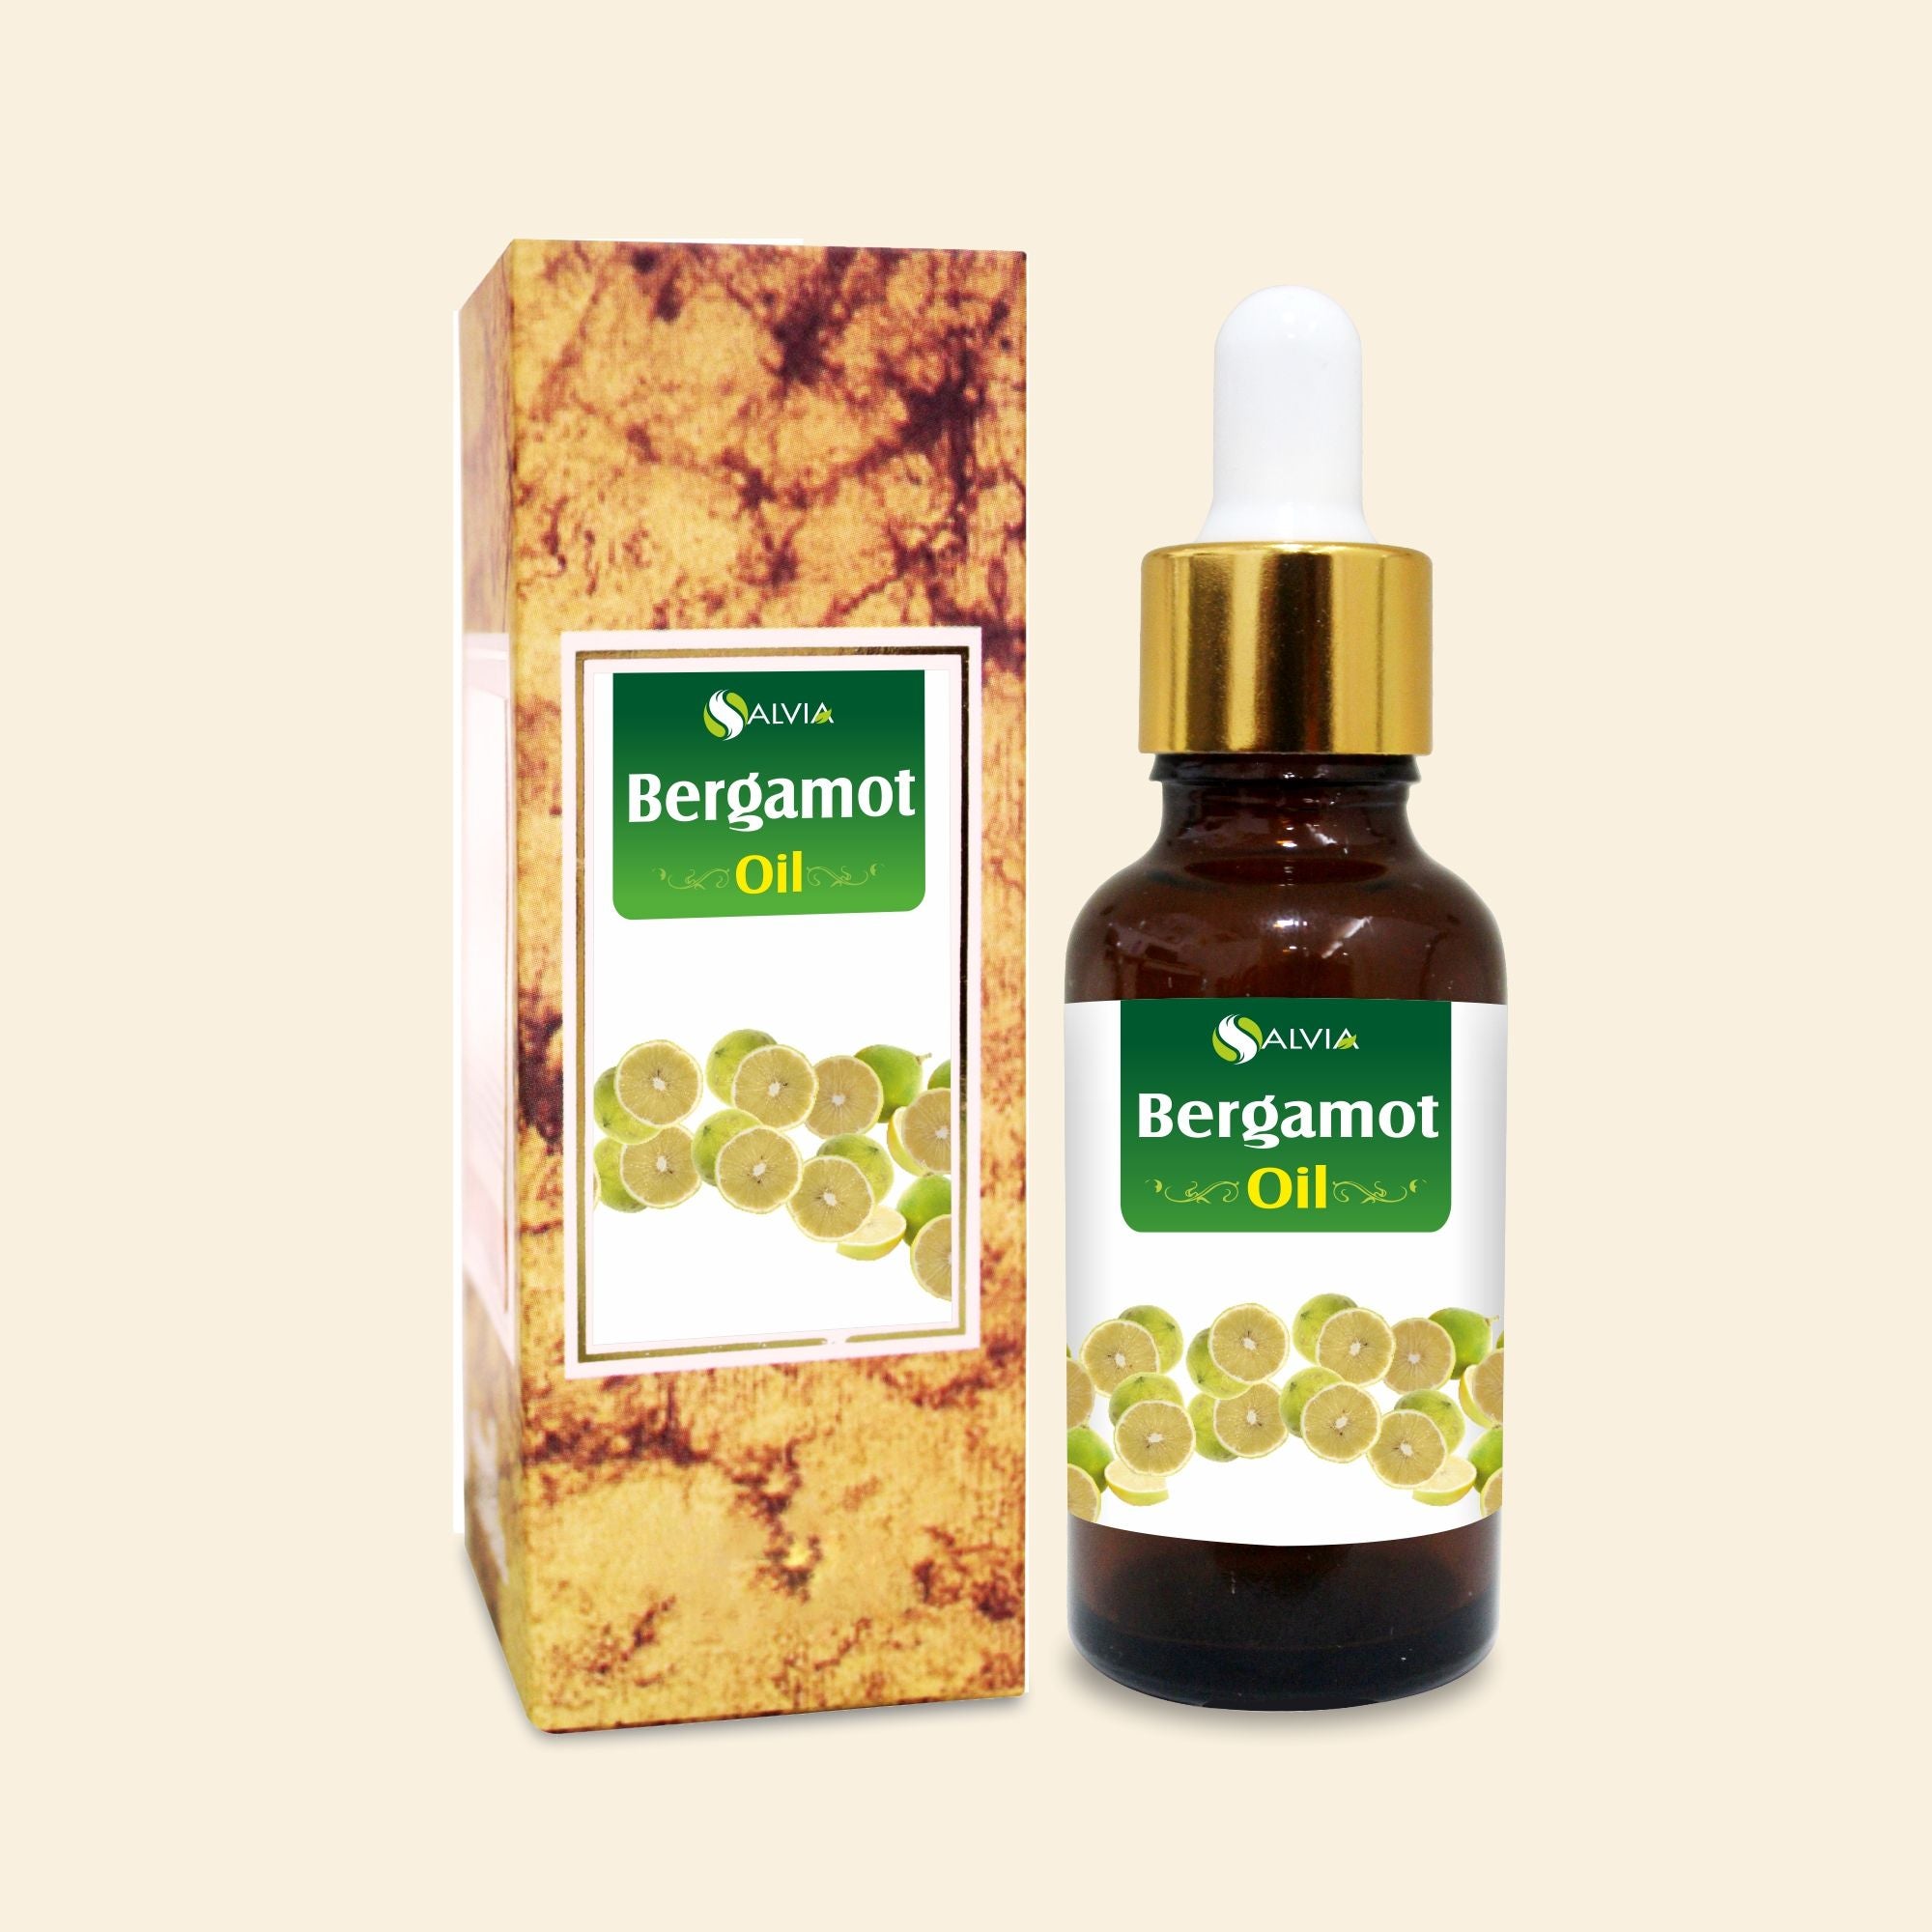 Salvia Natural Essential Oils,Acne,Anti-acne Oil Bergamot Oil (Citrus Aurantium) 100% Natural Pure Essential Oil